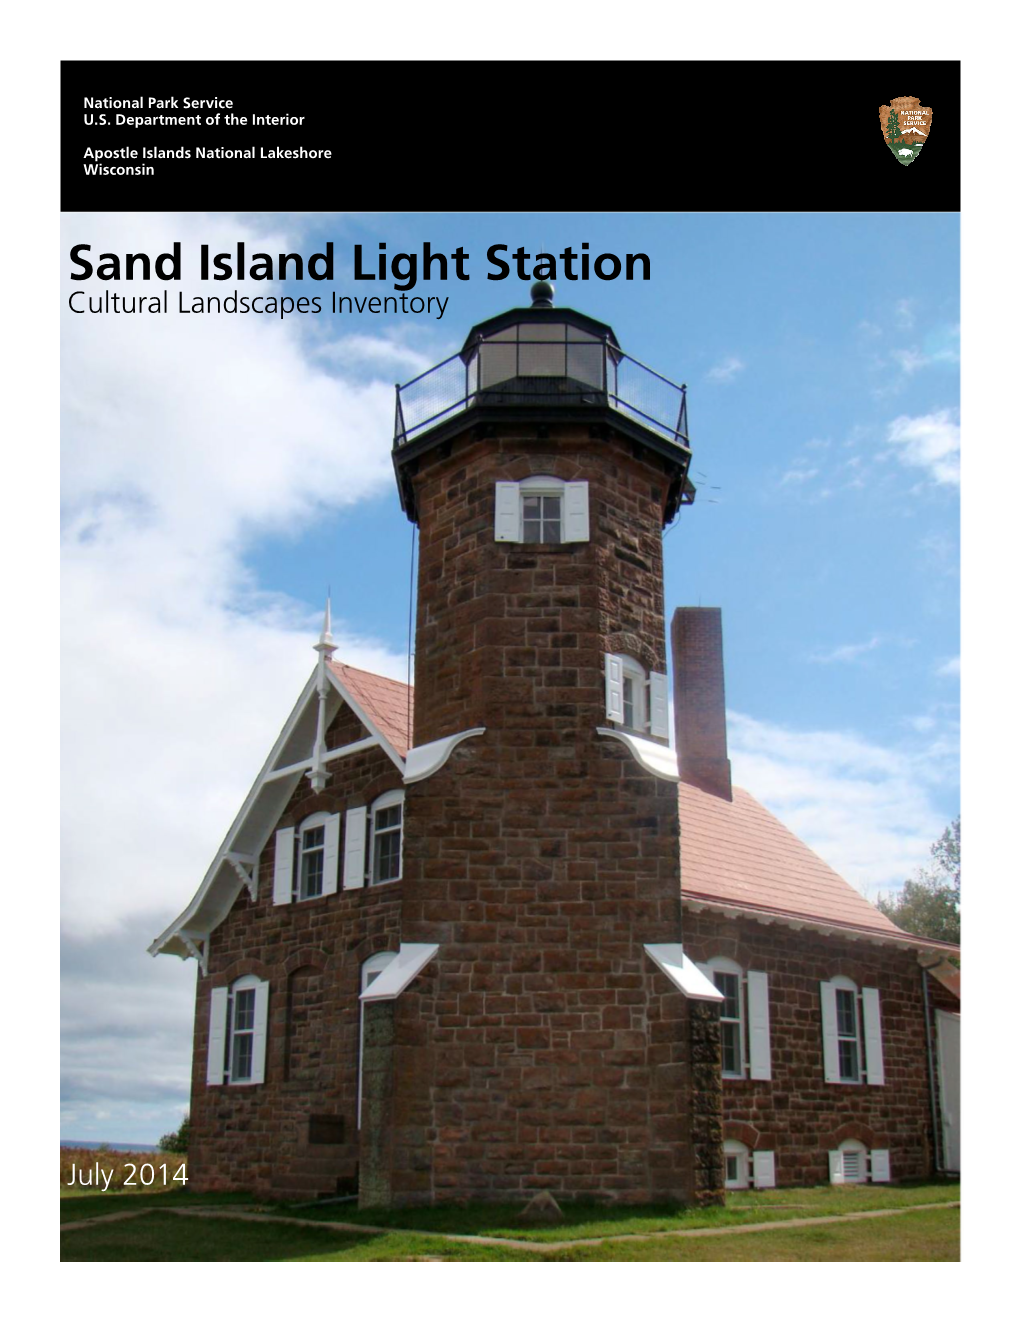 Sand Island Light Station Cultural Landscapes Inventory